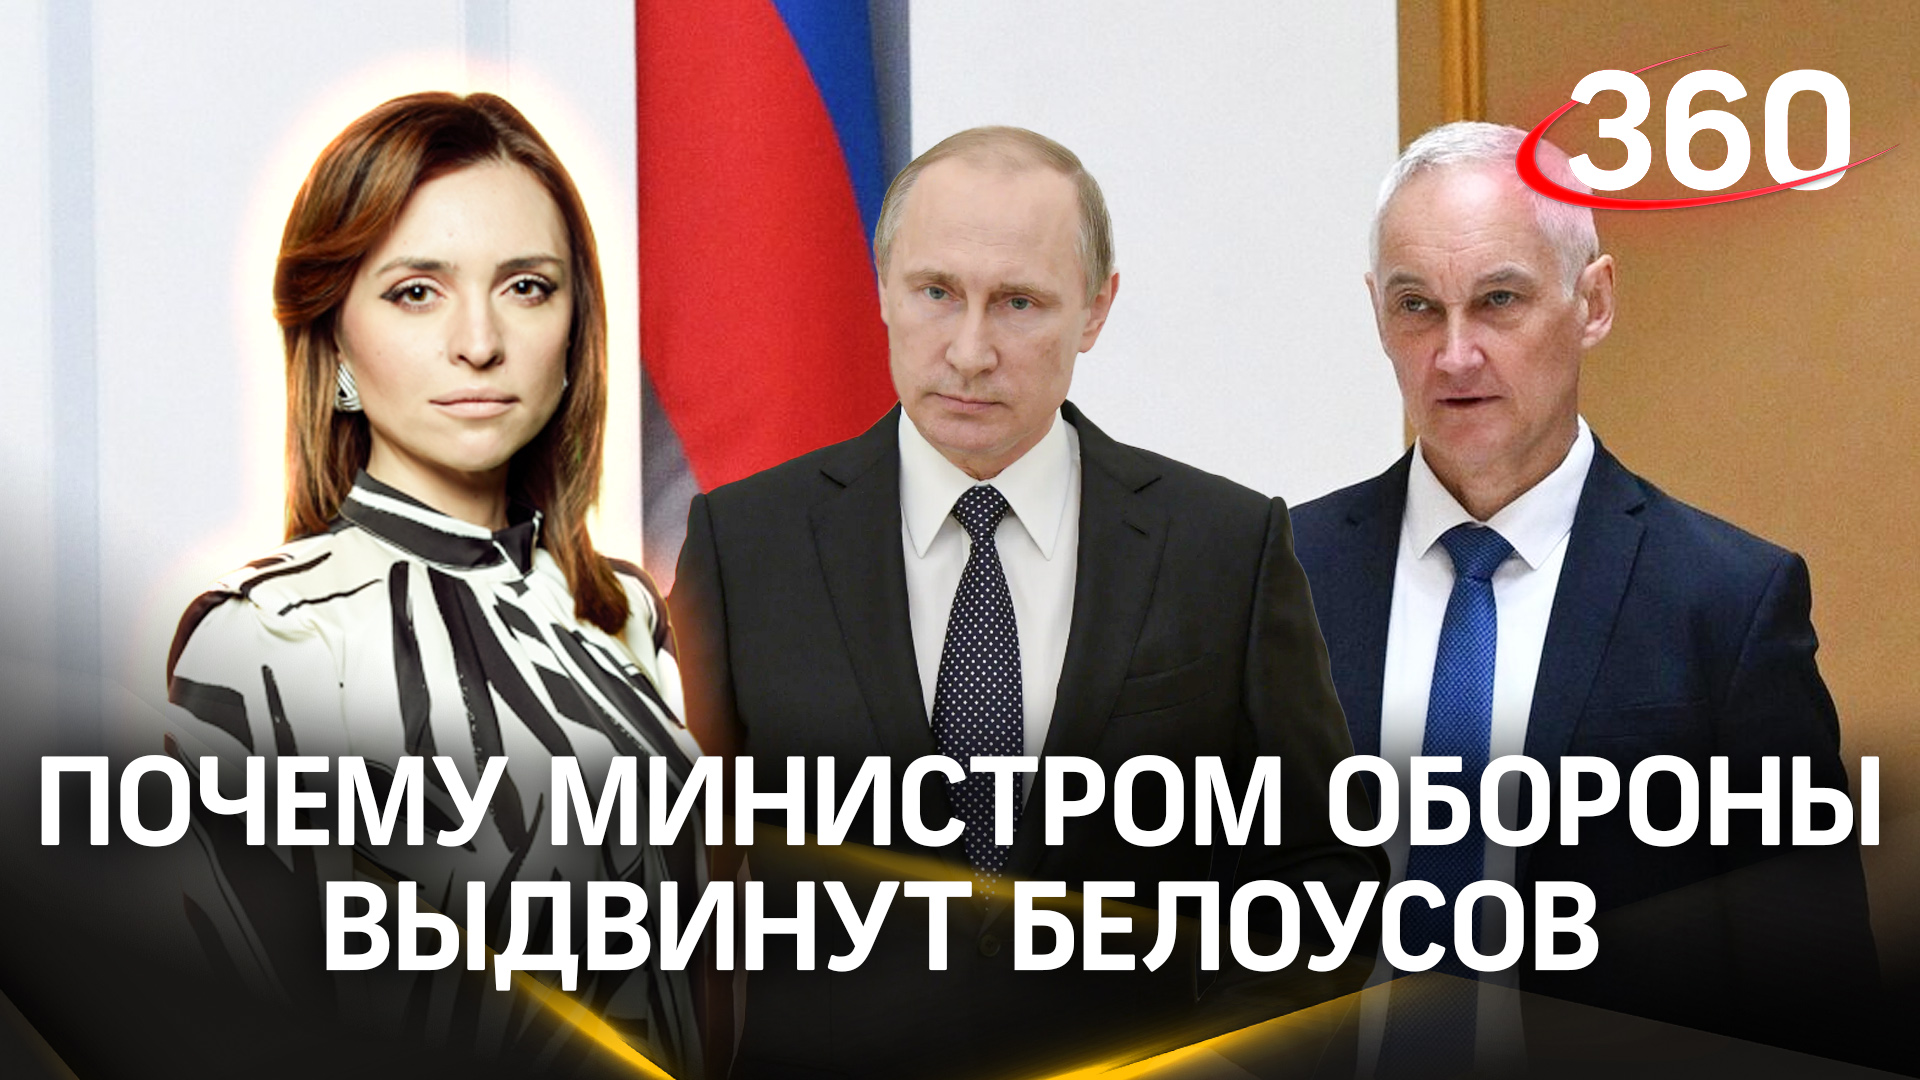 Почему Путин выдвинул Белоусова на пост министра обороны? Малашенко